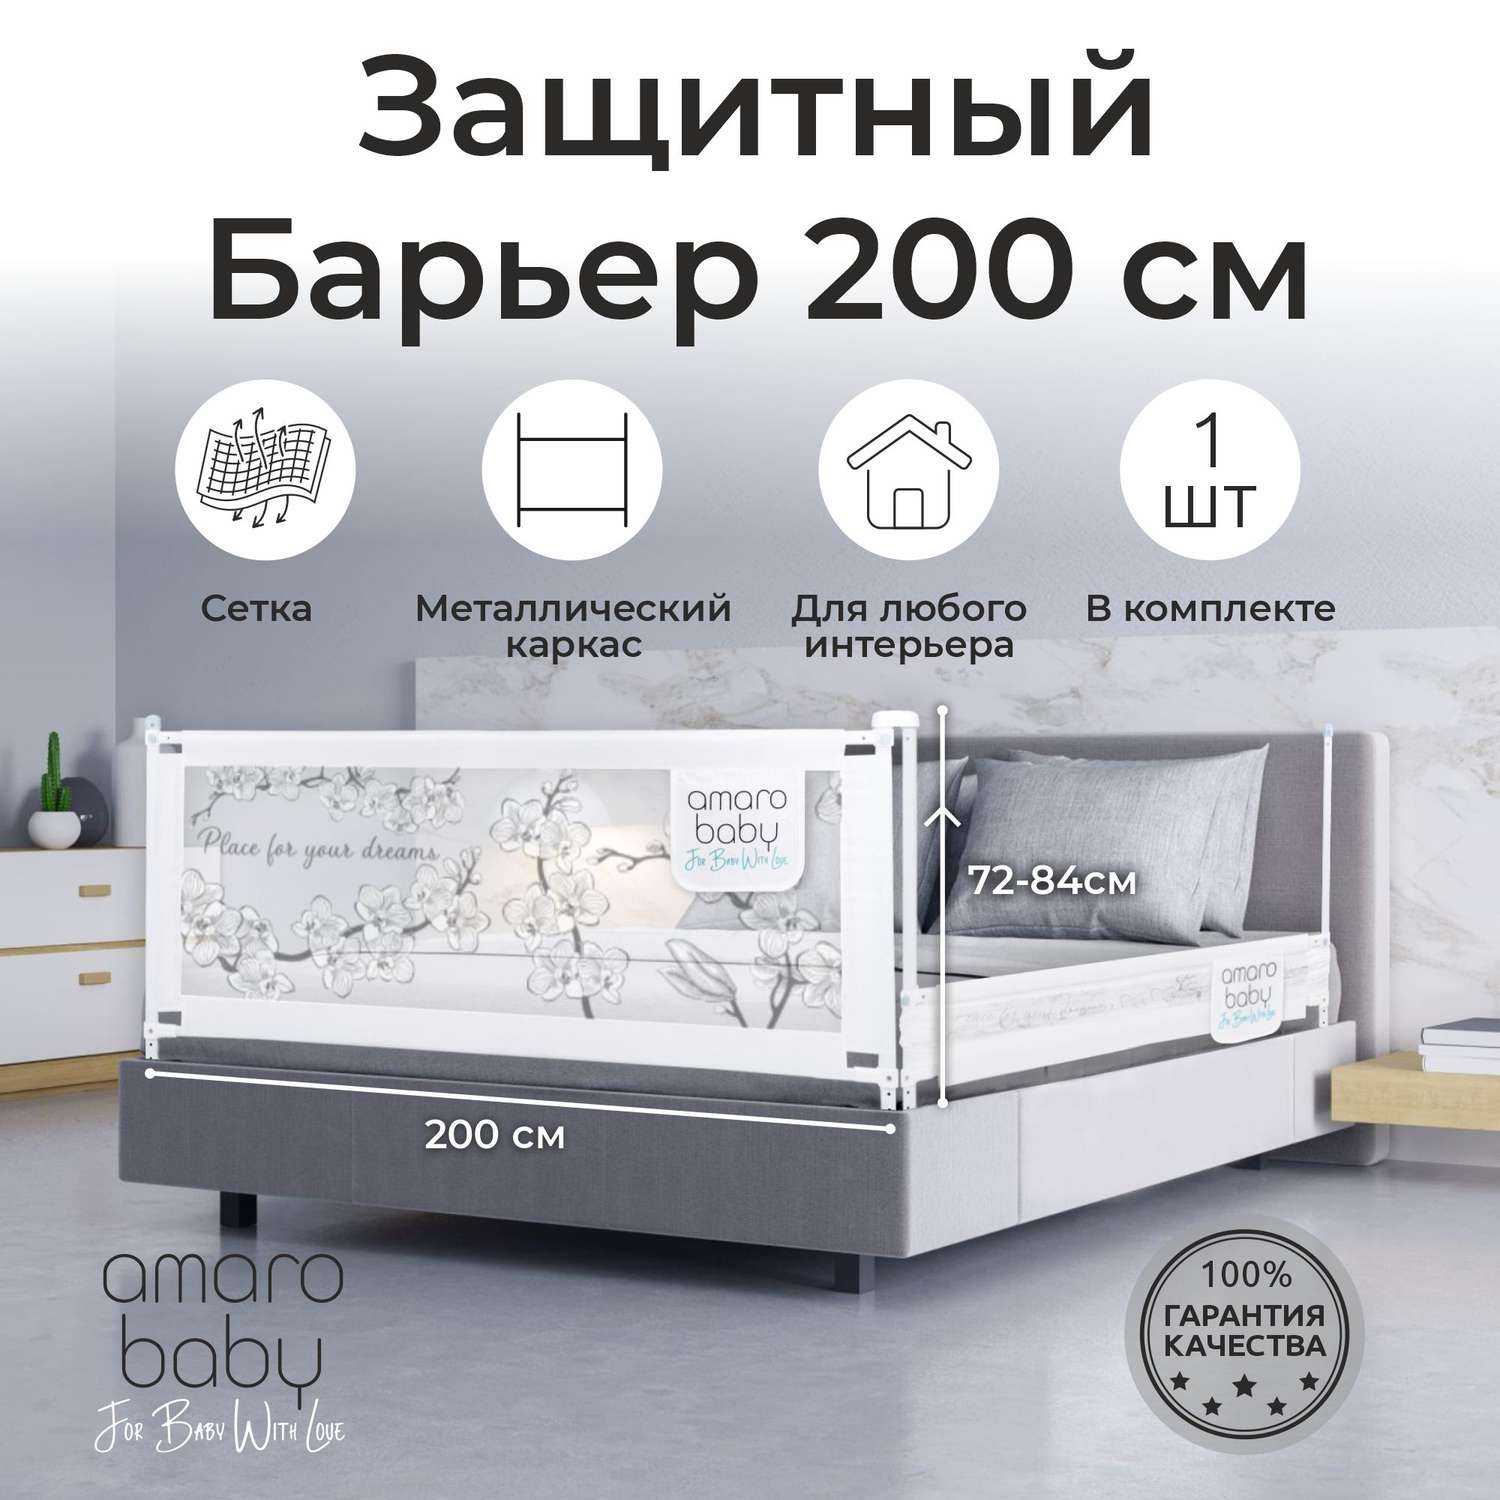 Барьер защитный для кровати AmaroBaby белый 200 см - фото 2